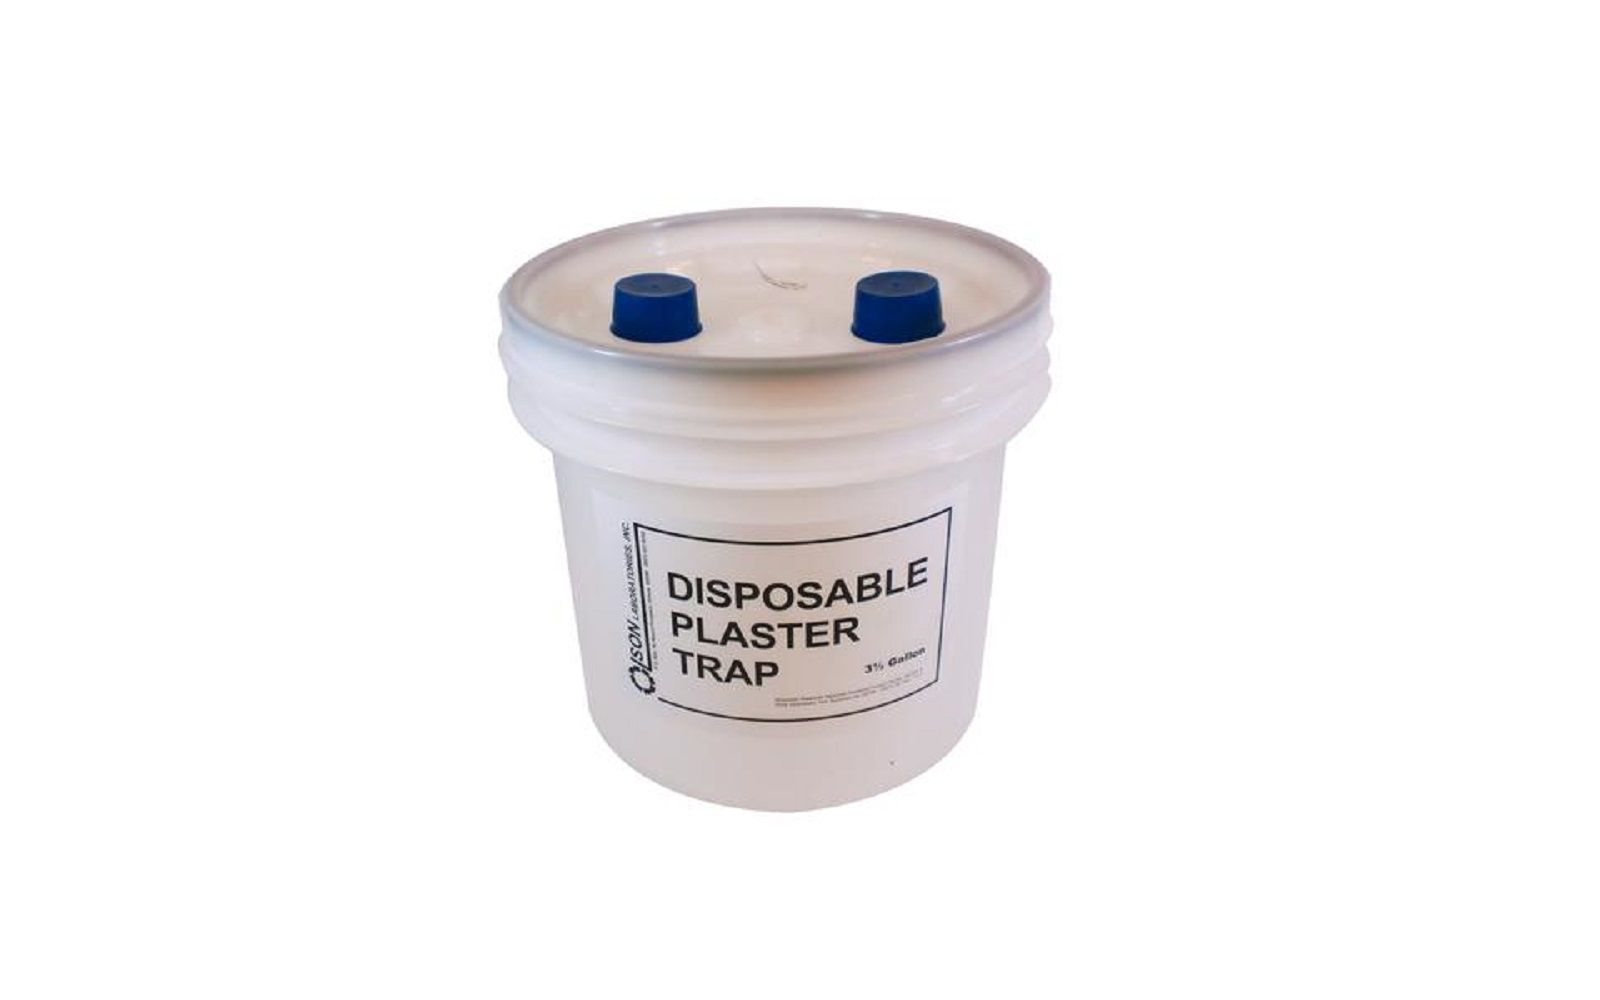 Disposable-Plaster-Trap-–-3.5-Gallon-Container-Refill